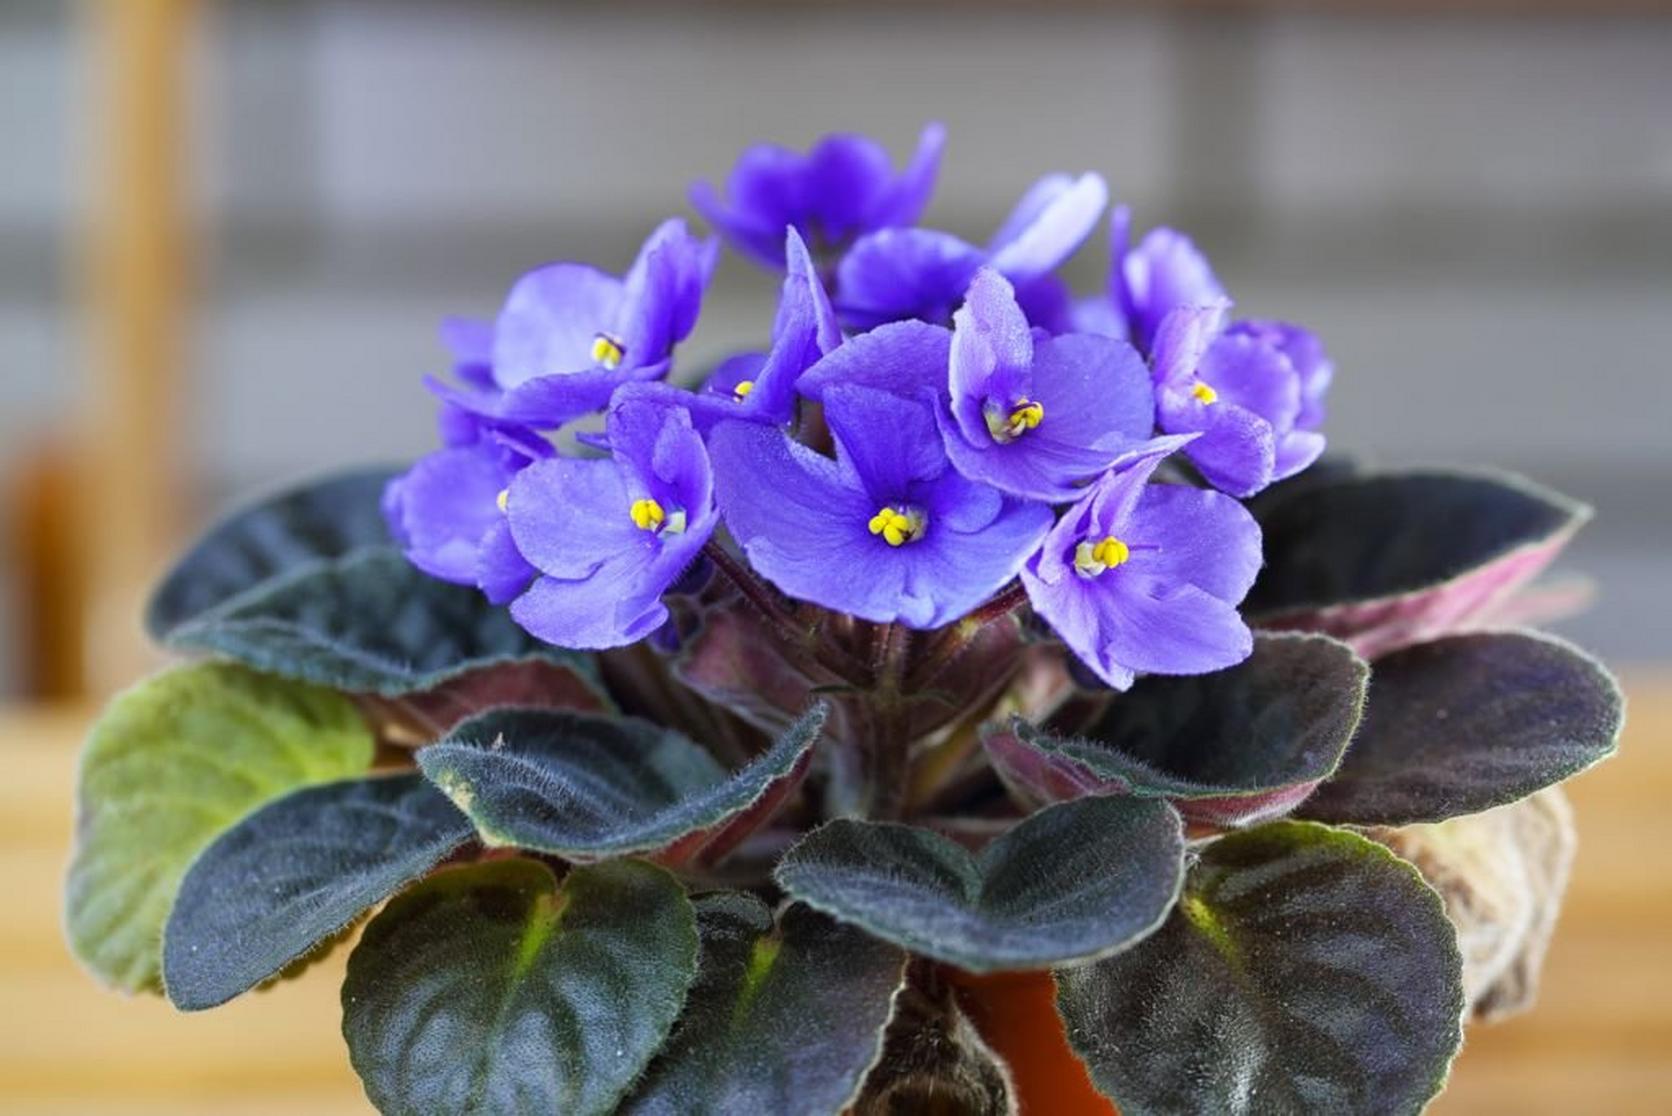 African-violet-purple-flowering-plant